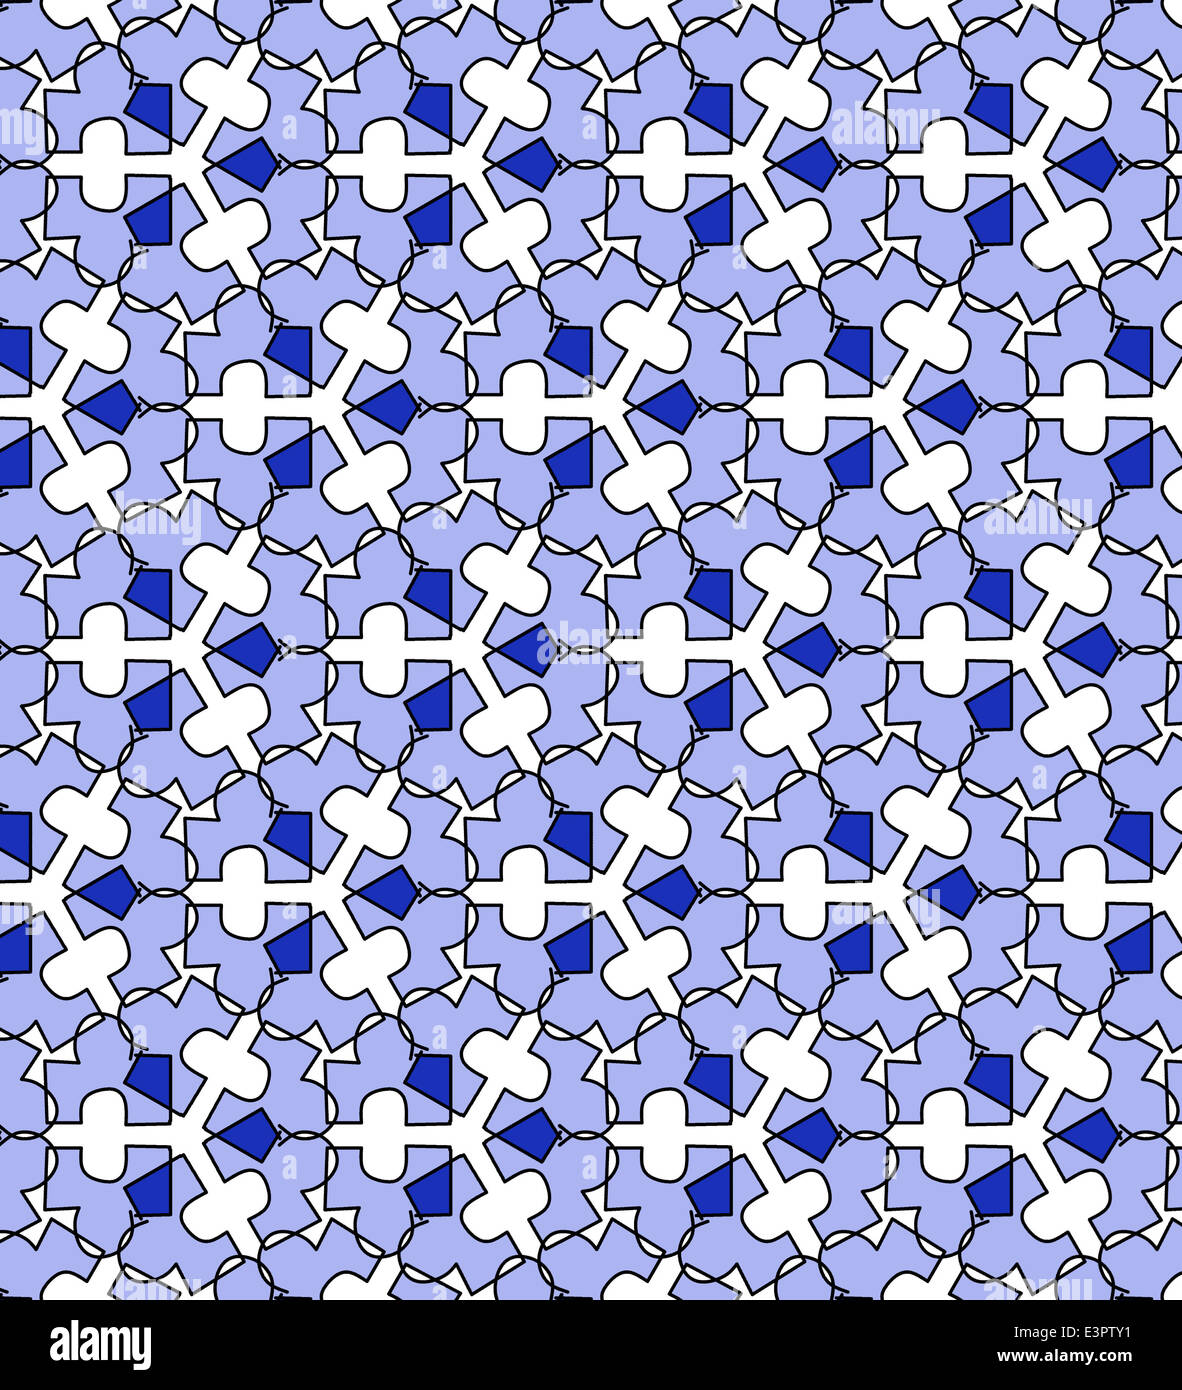 Illustration de jigsaw piece symétrique du papier peint à motifs Banque D'Images